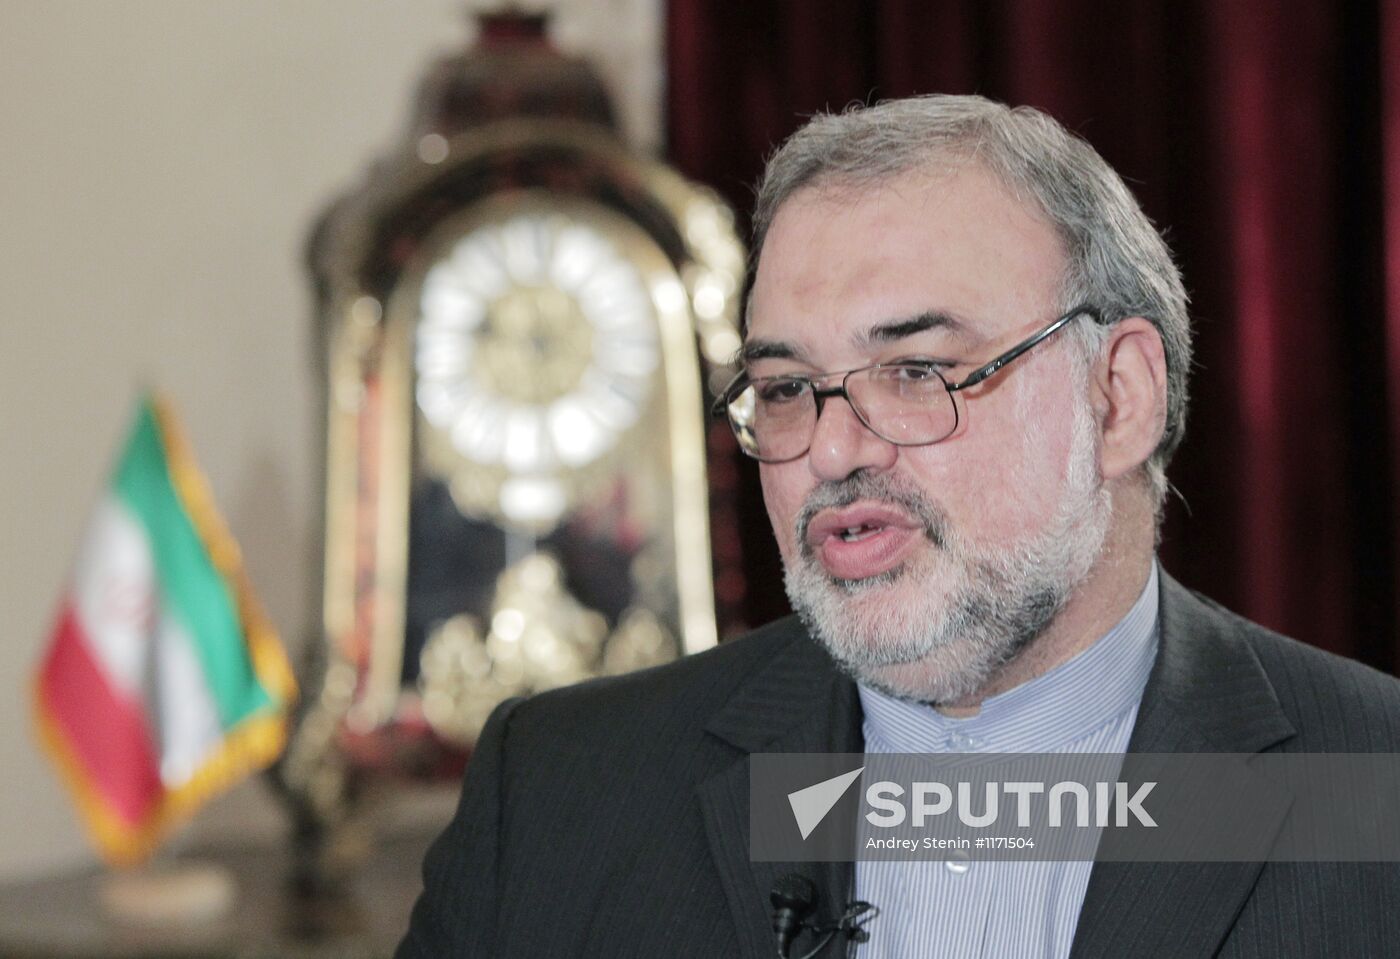 Iran's Ambassador to Russia Mahmoud-Reza Sajjadi